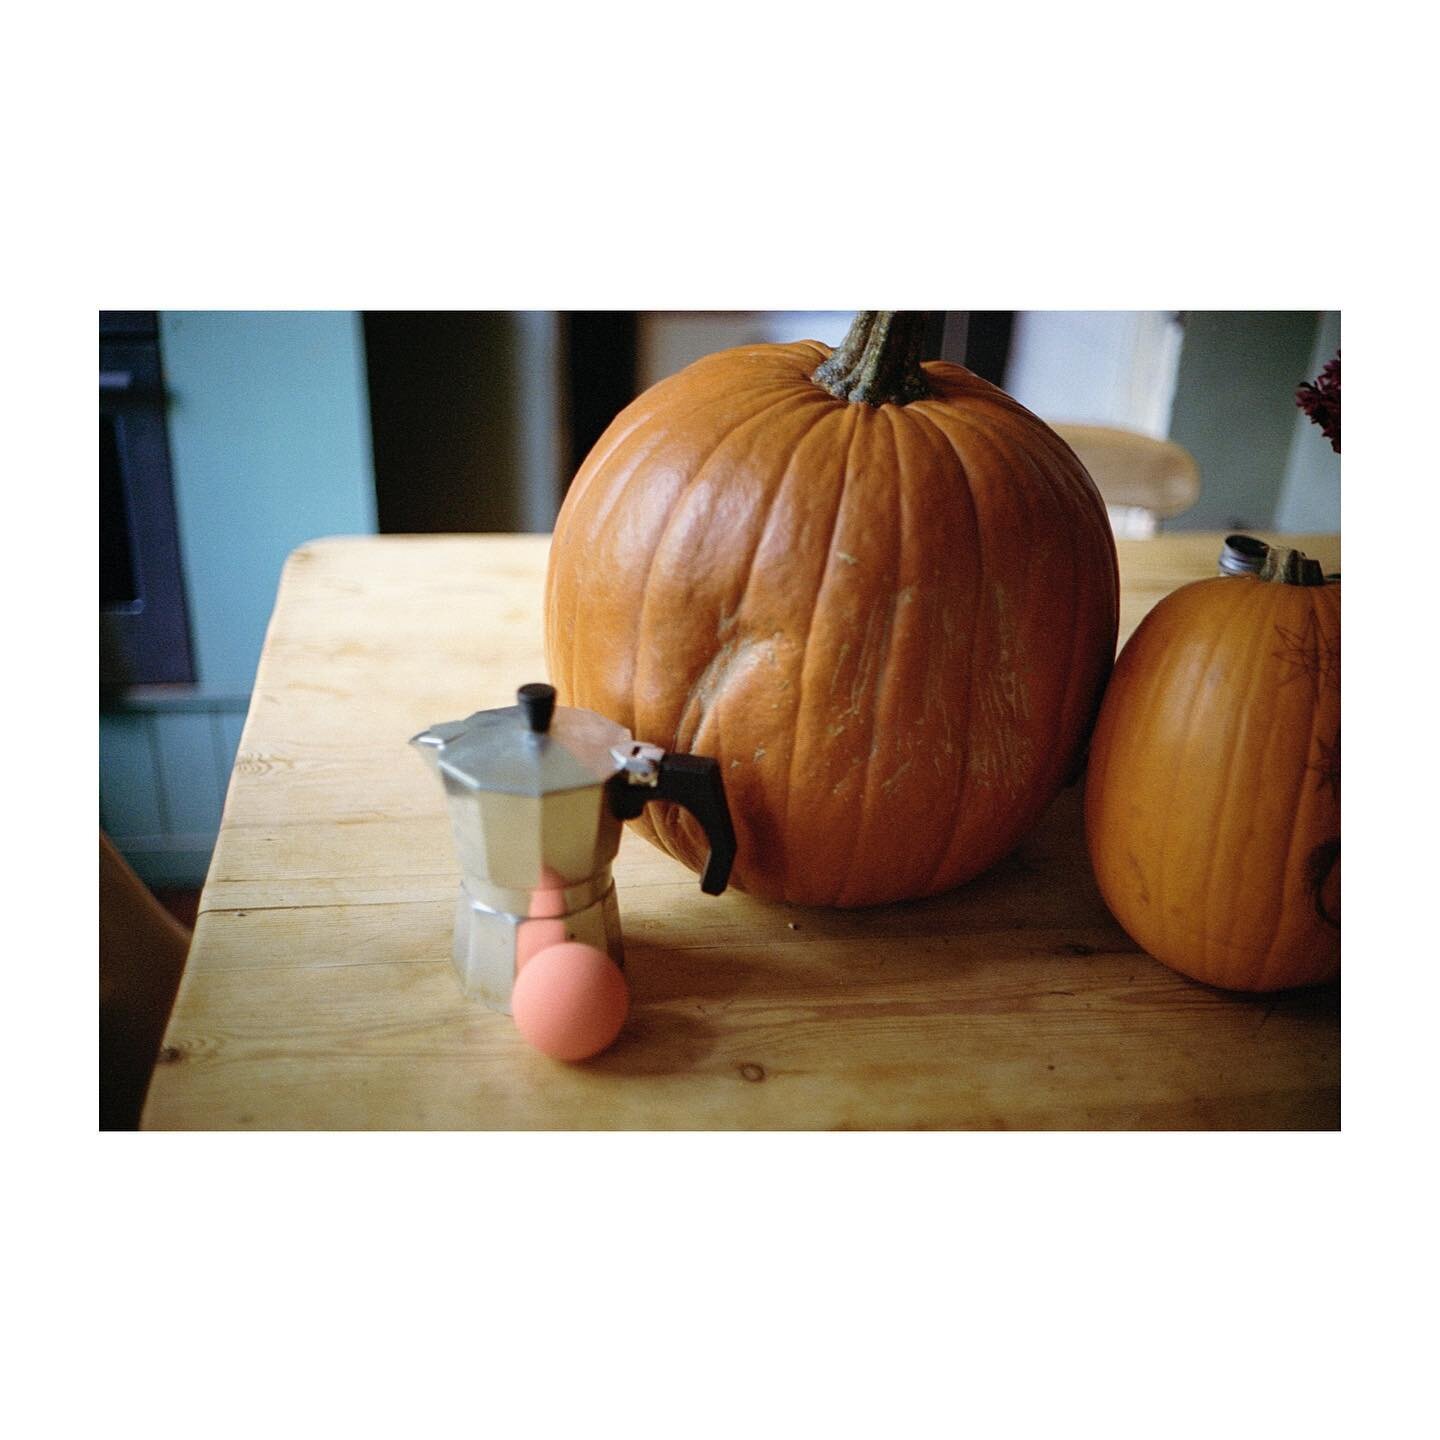 Autumn table 🍂 
London, 2022
.
.
.
#pumpkin #halloween #kitchentable #canonet #portra400 #filmisnotdead #kodak #35mm